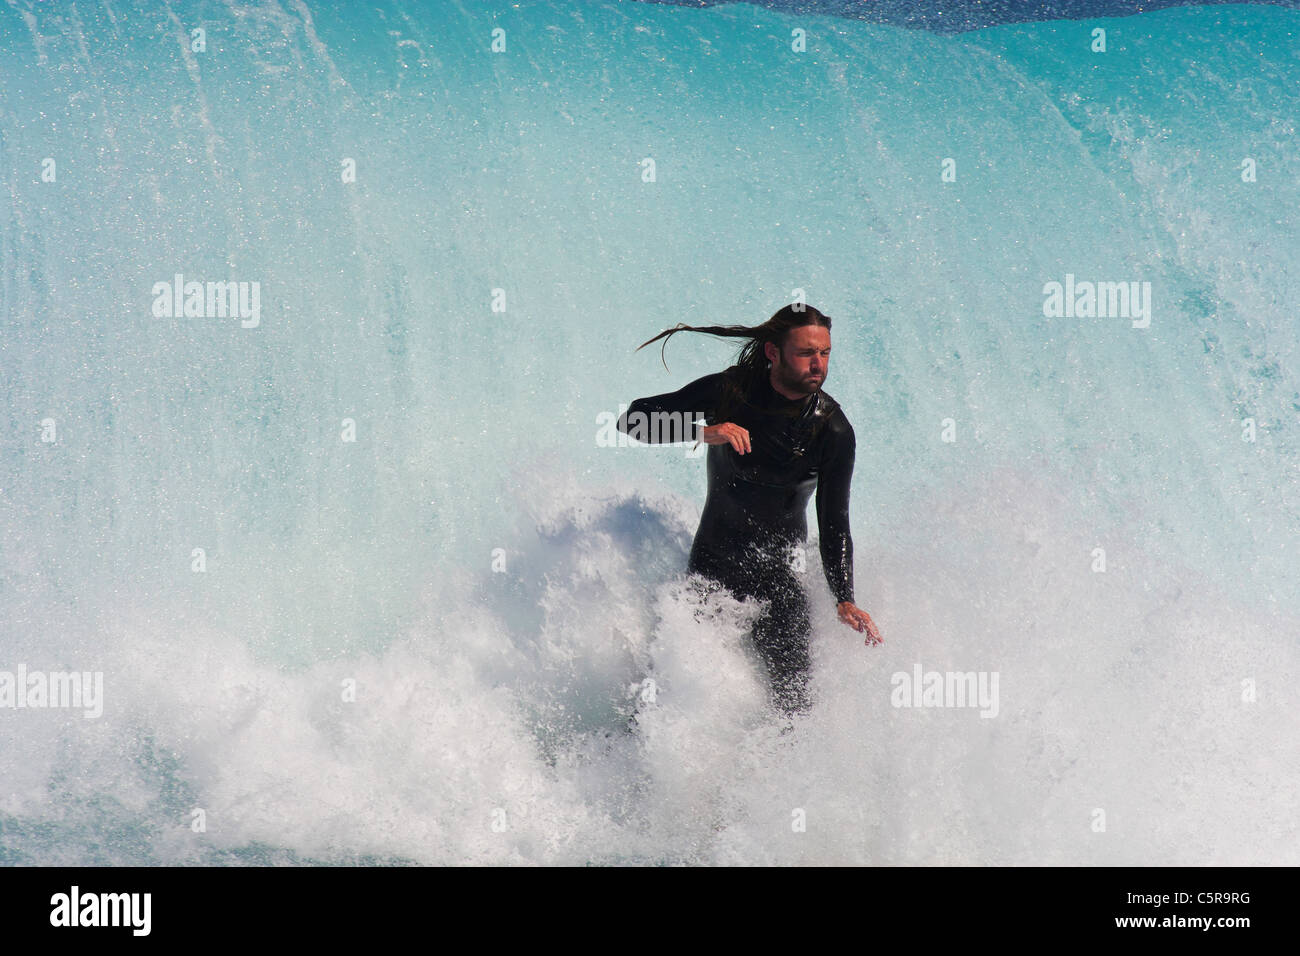 Este surfista toma una respiración profunda como él está a punto de ser tomados por la oleada masiva detrás de él. Foto de stock